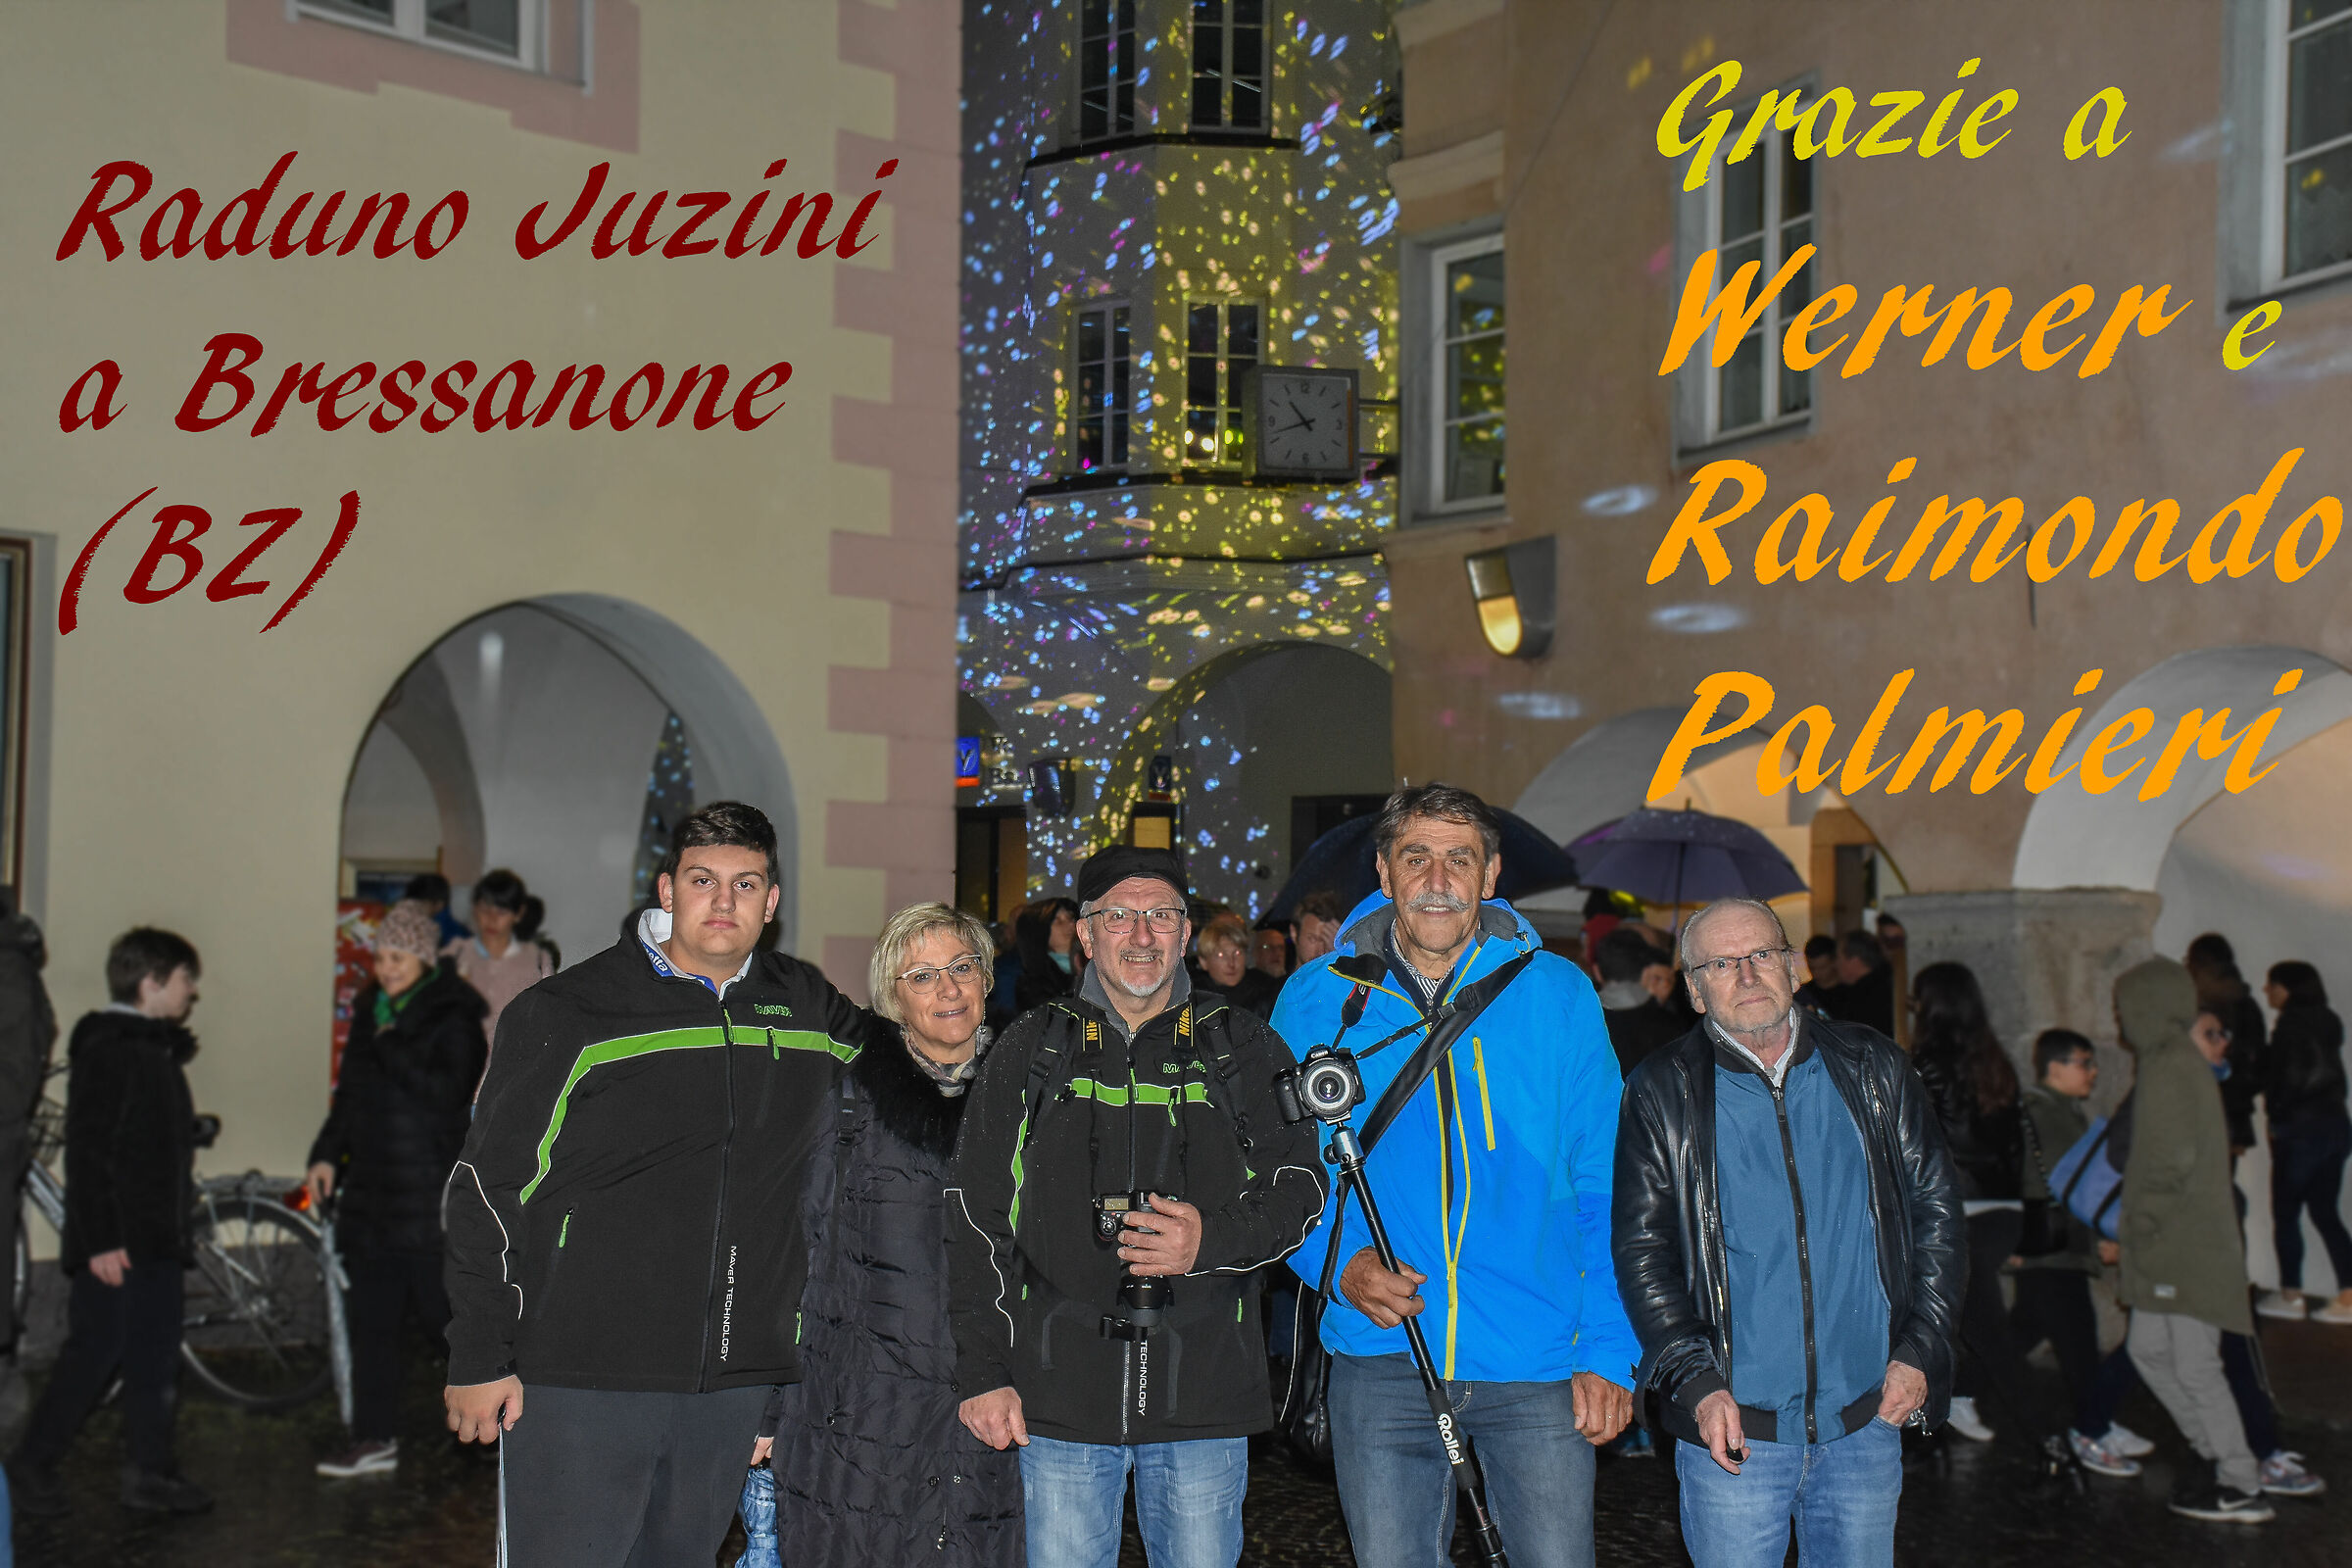 A mini Juza rally in Bressanone...